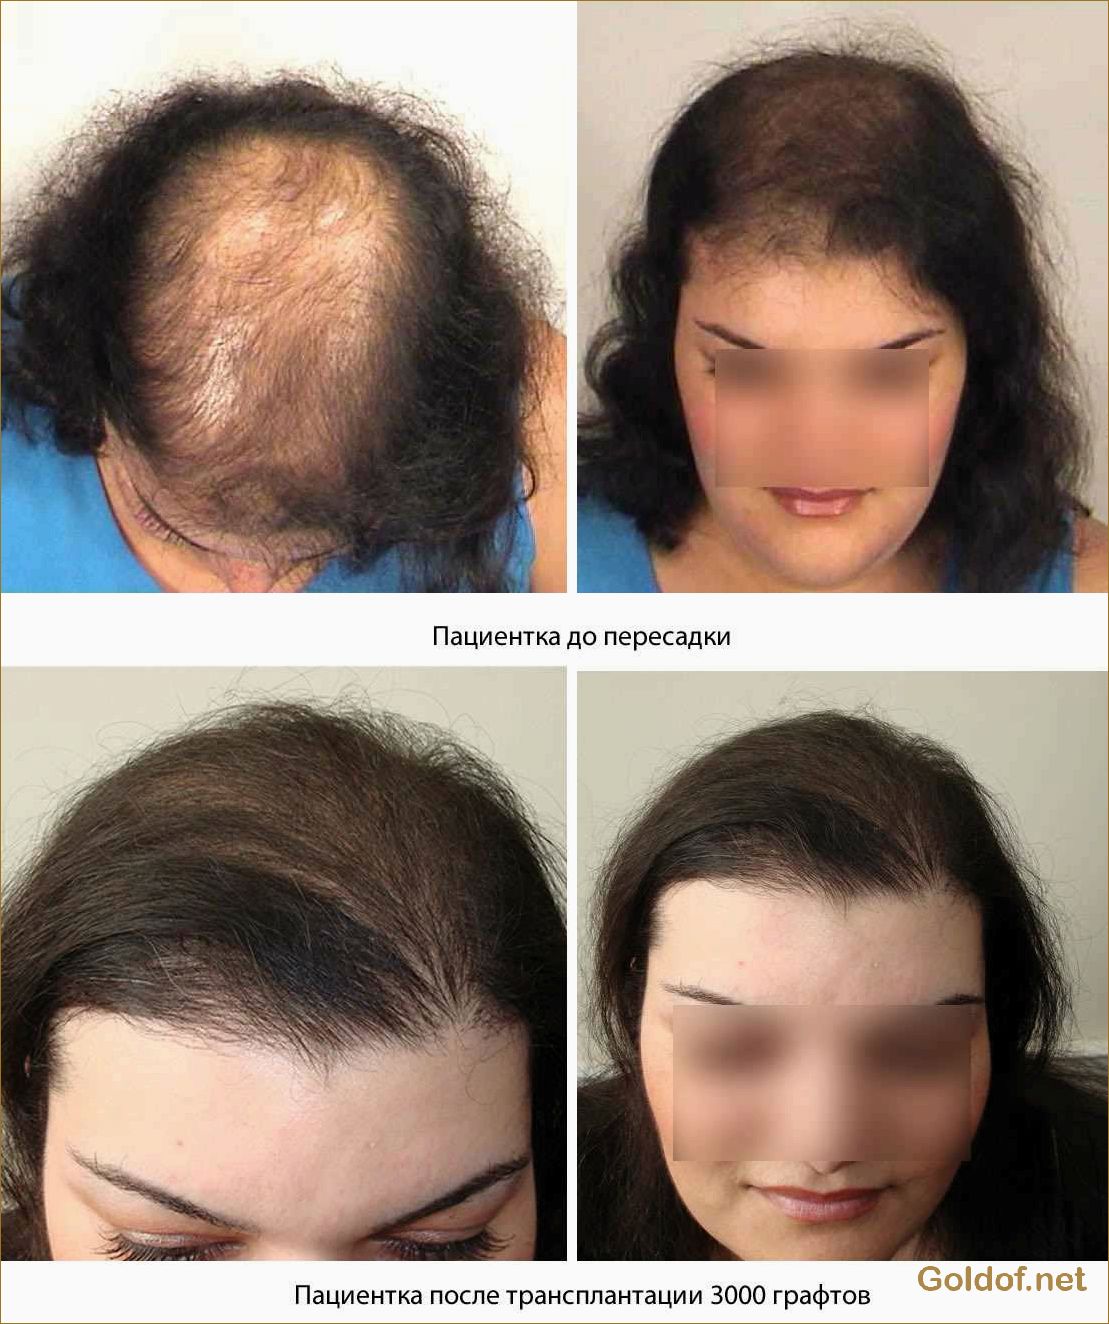 Пересадка волос для женщин: как выбрать качественный метод и добиться эффекта натуральности